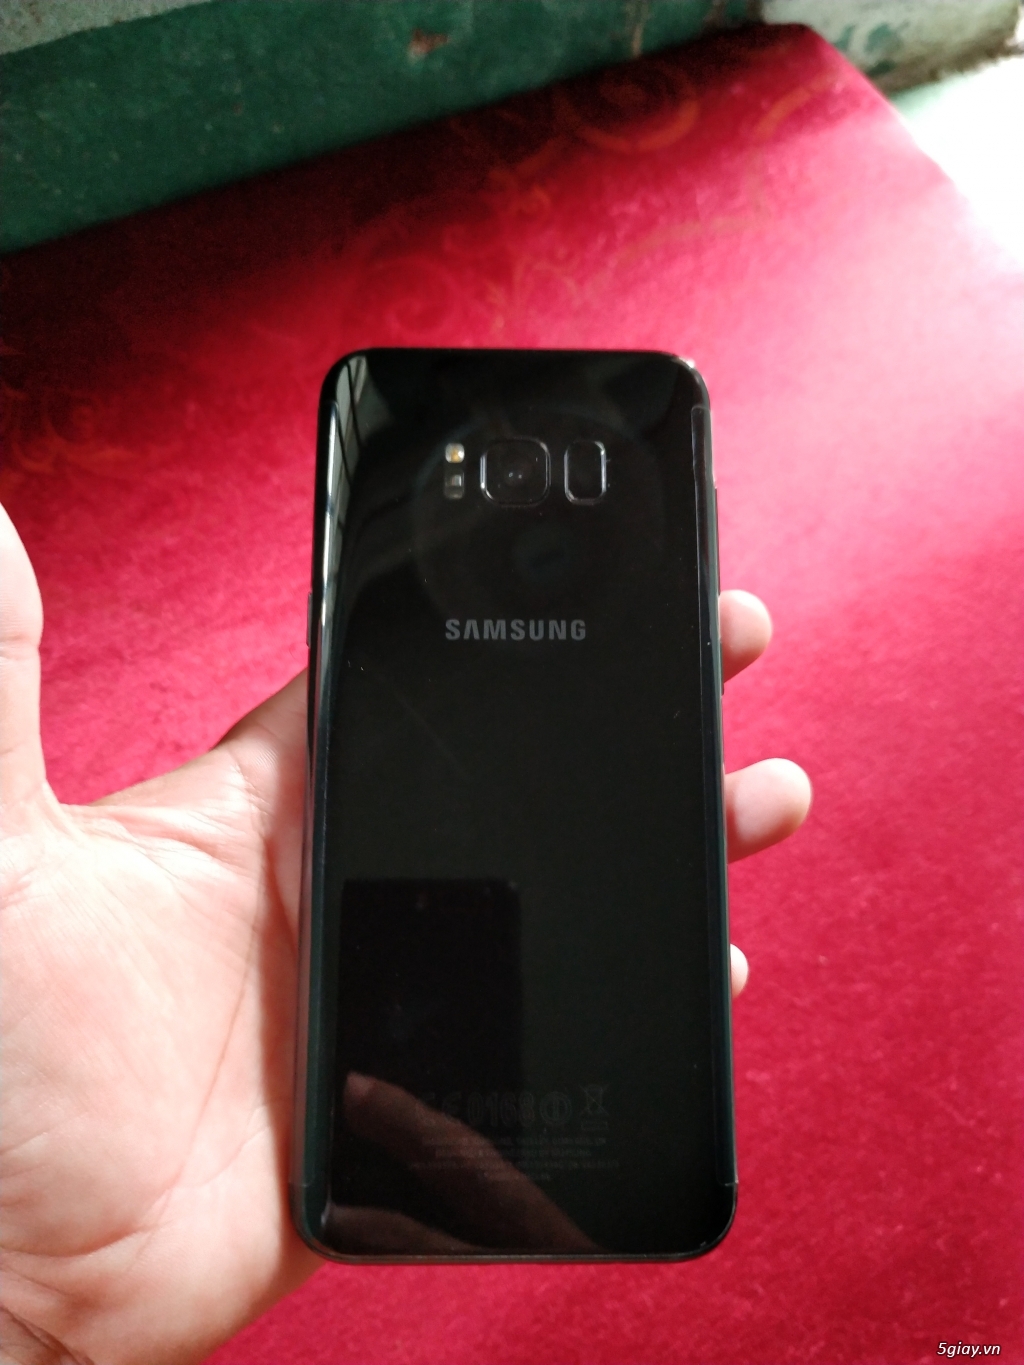 Samsung s8+ đen bóng chính hãng - 2